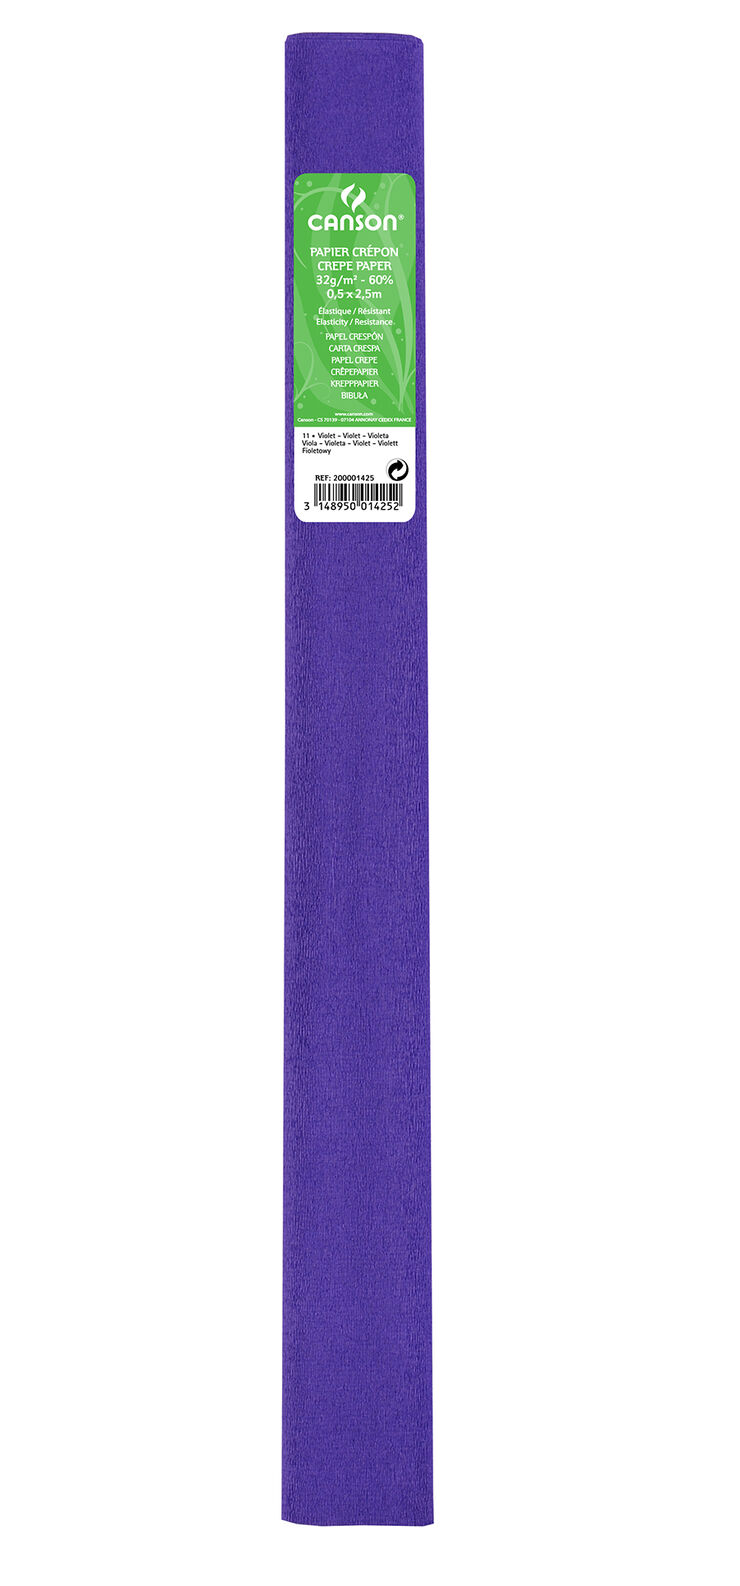 Rotlle Paper Crespó (Pinotxo) Canson 50x250cm violeta